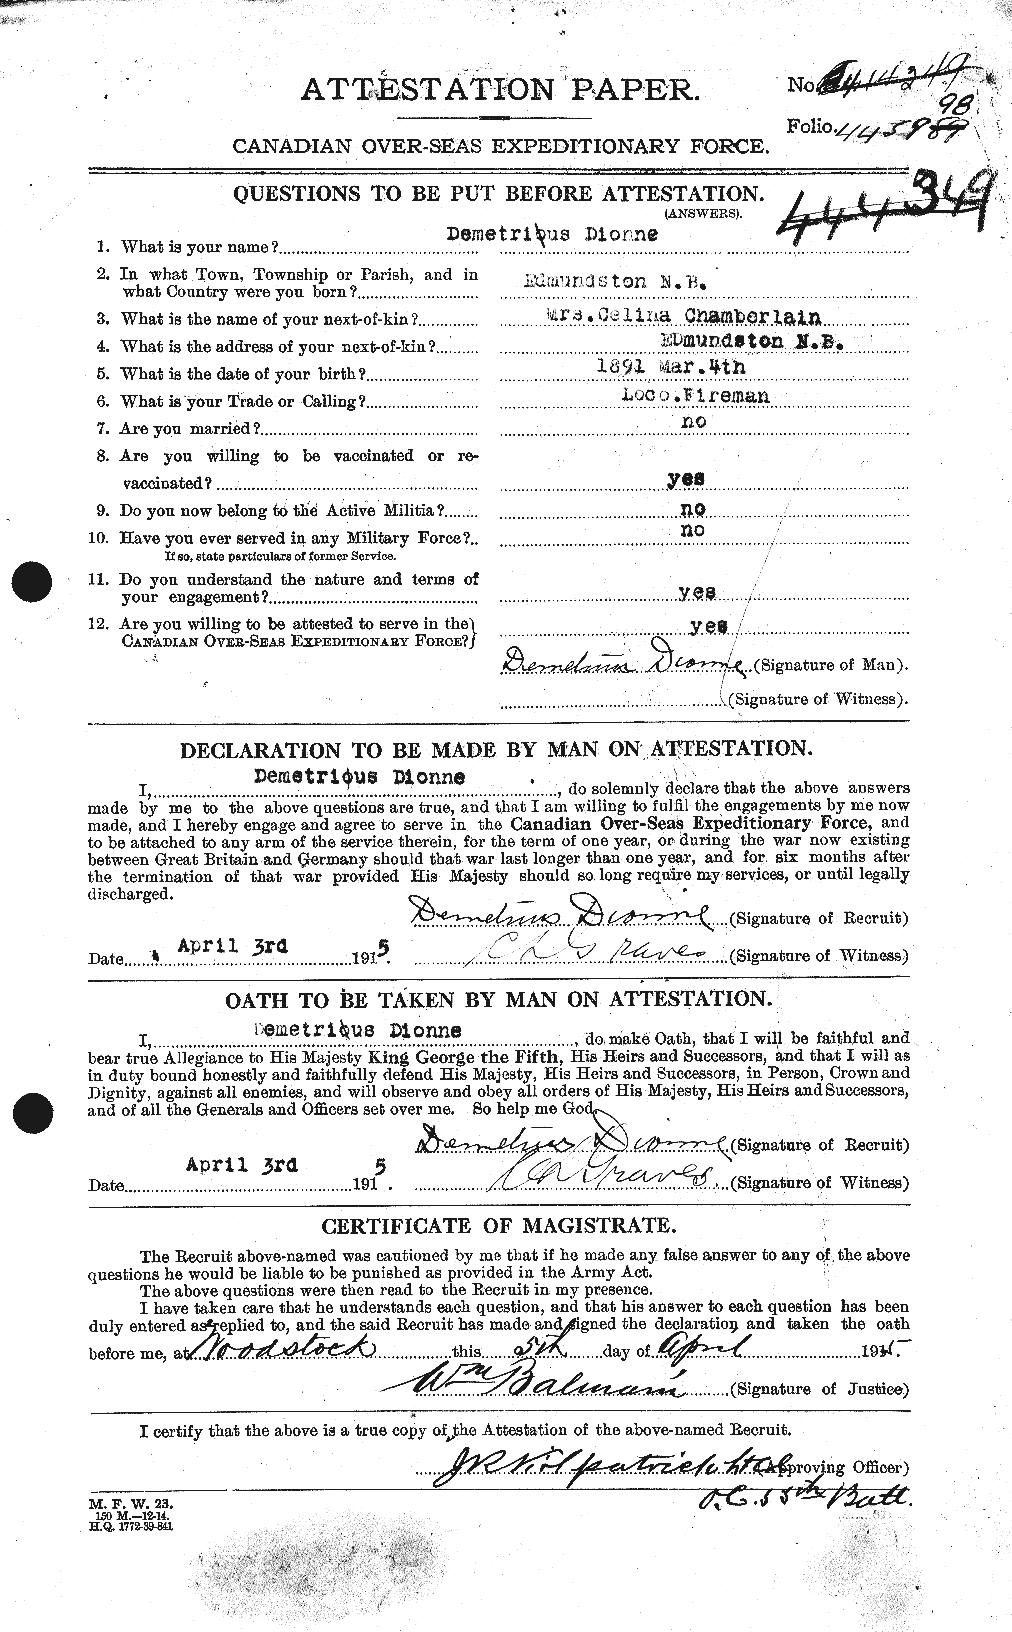 Dossiers du Personnel de la Première Guerre mondiale - CEC 292575a